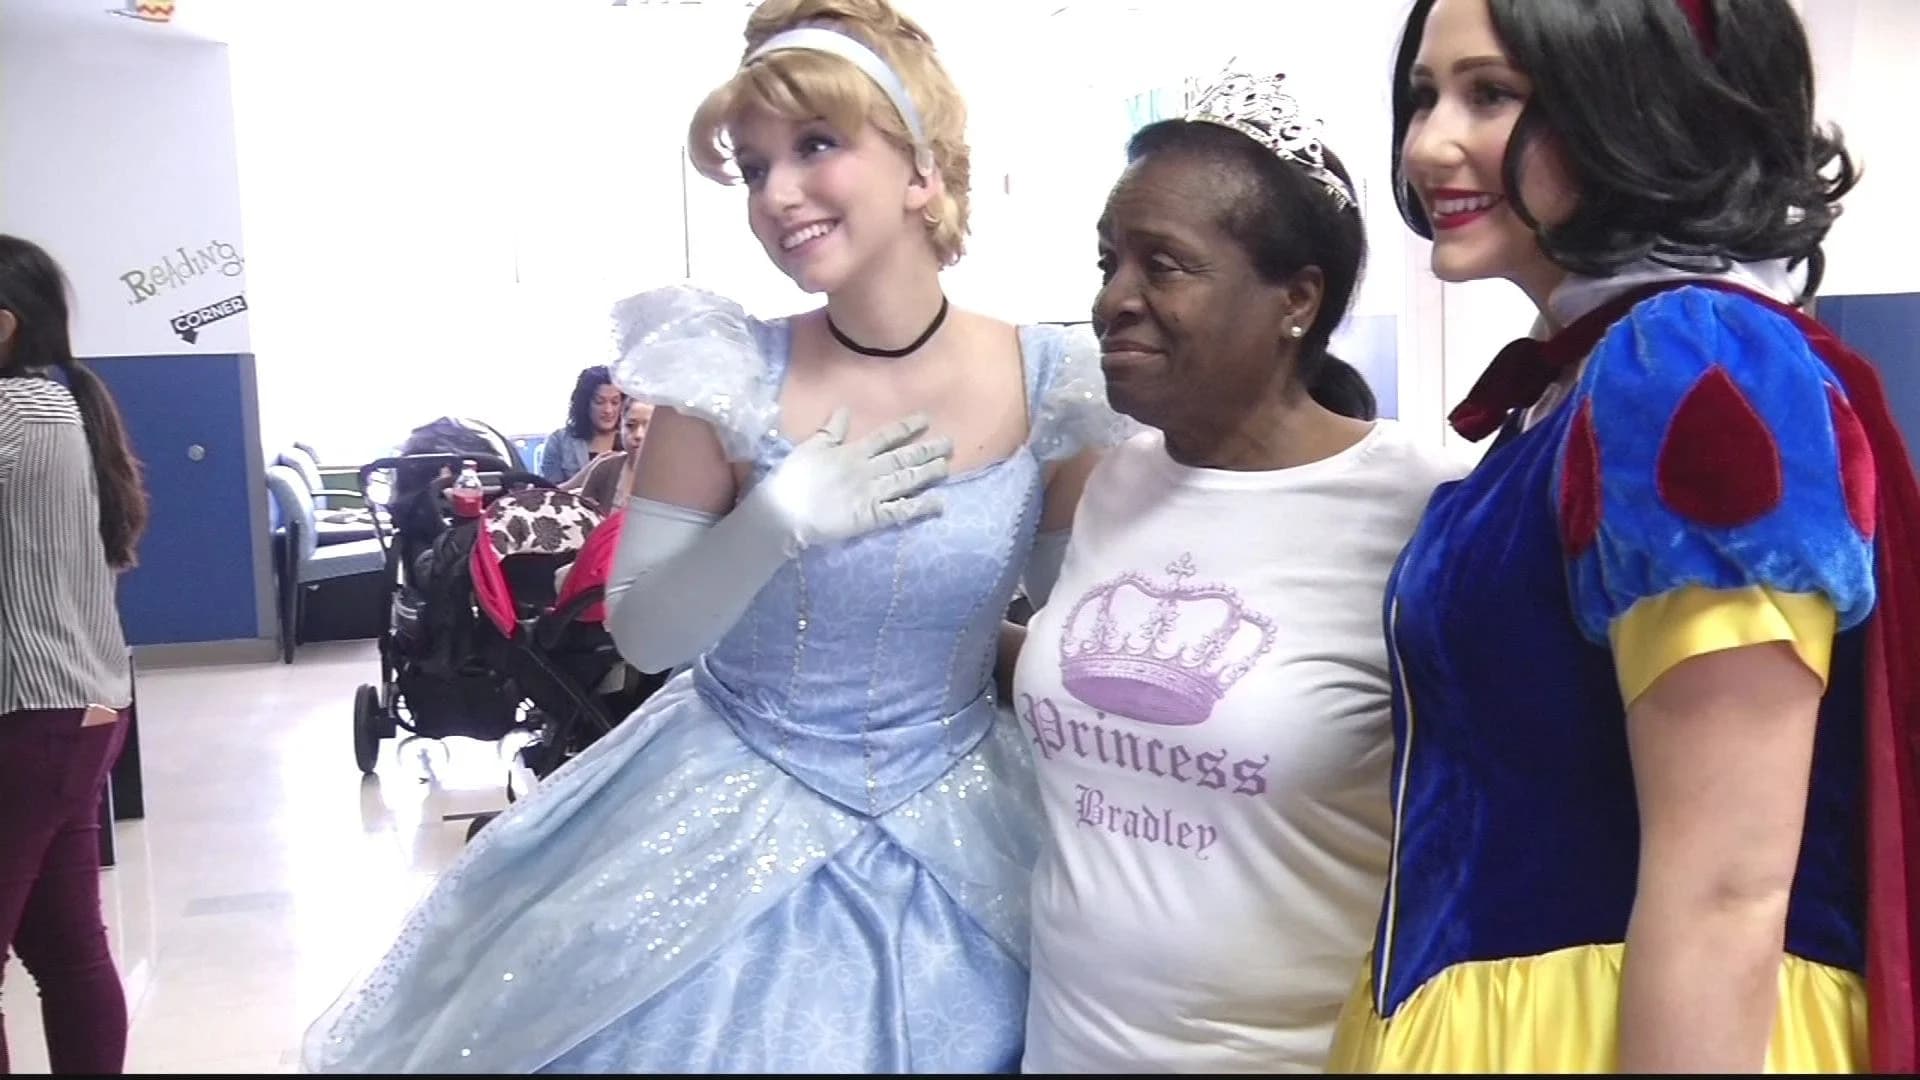 Volunteer ‘princesses’ visit children at St. Barnabas Hospital